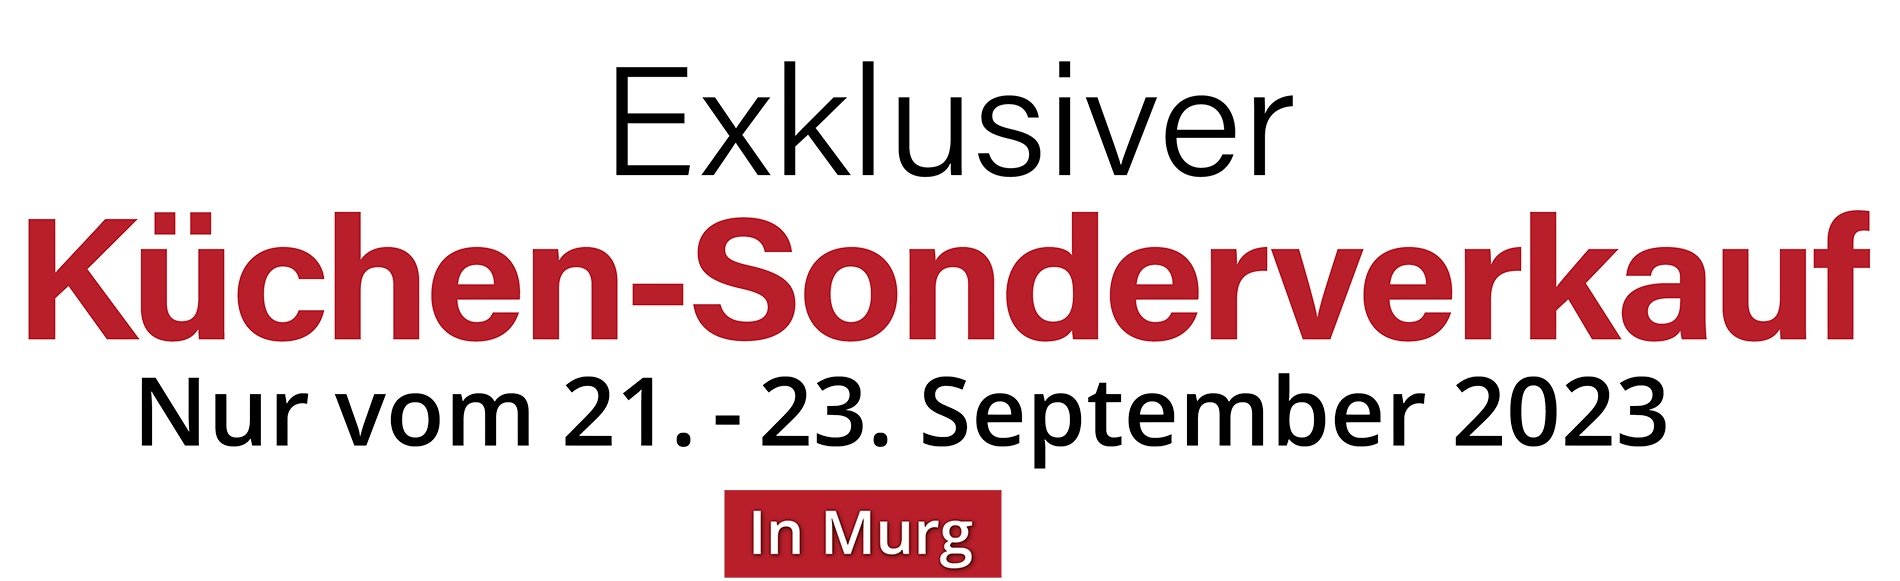 Exklusiver Küchen-Sonderverkauf in Murg - nur vom 21. - 23. September 2023 in Murg